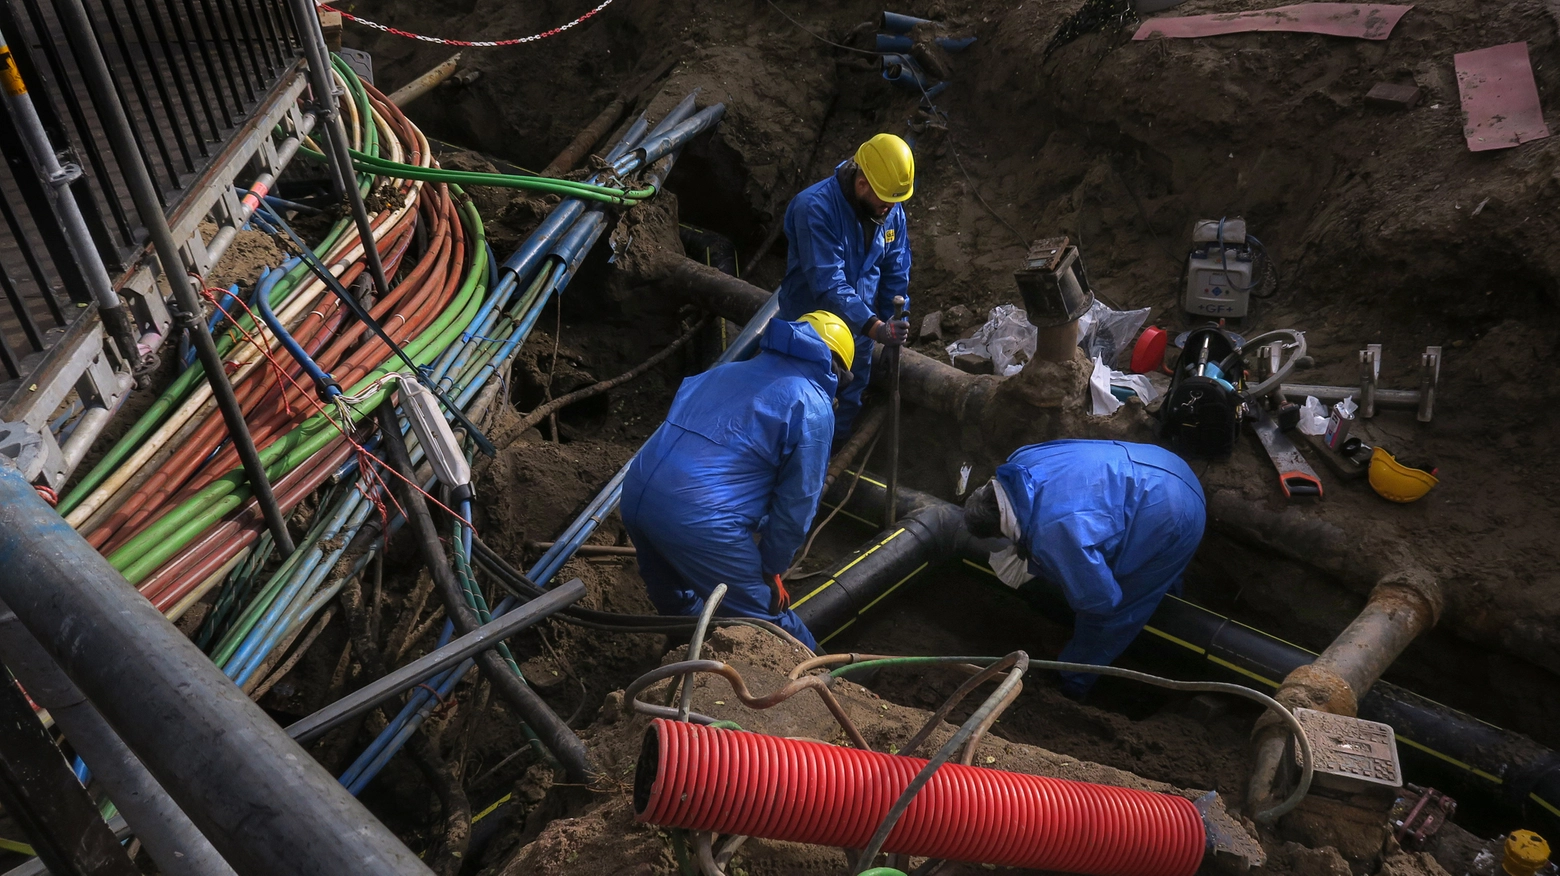 I lavori prevedono lo scavo per una infrastruttura di telecomunicazione (foto archivio)